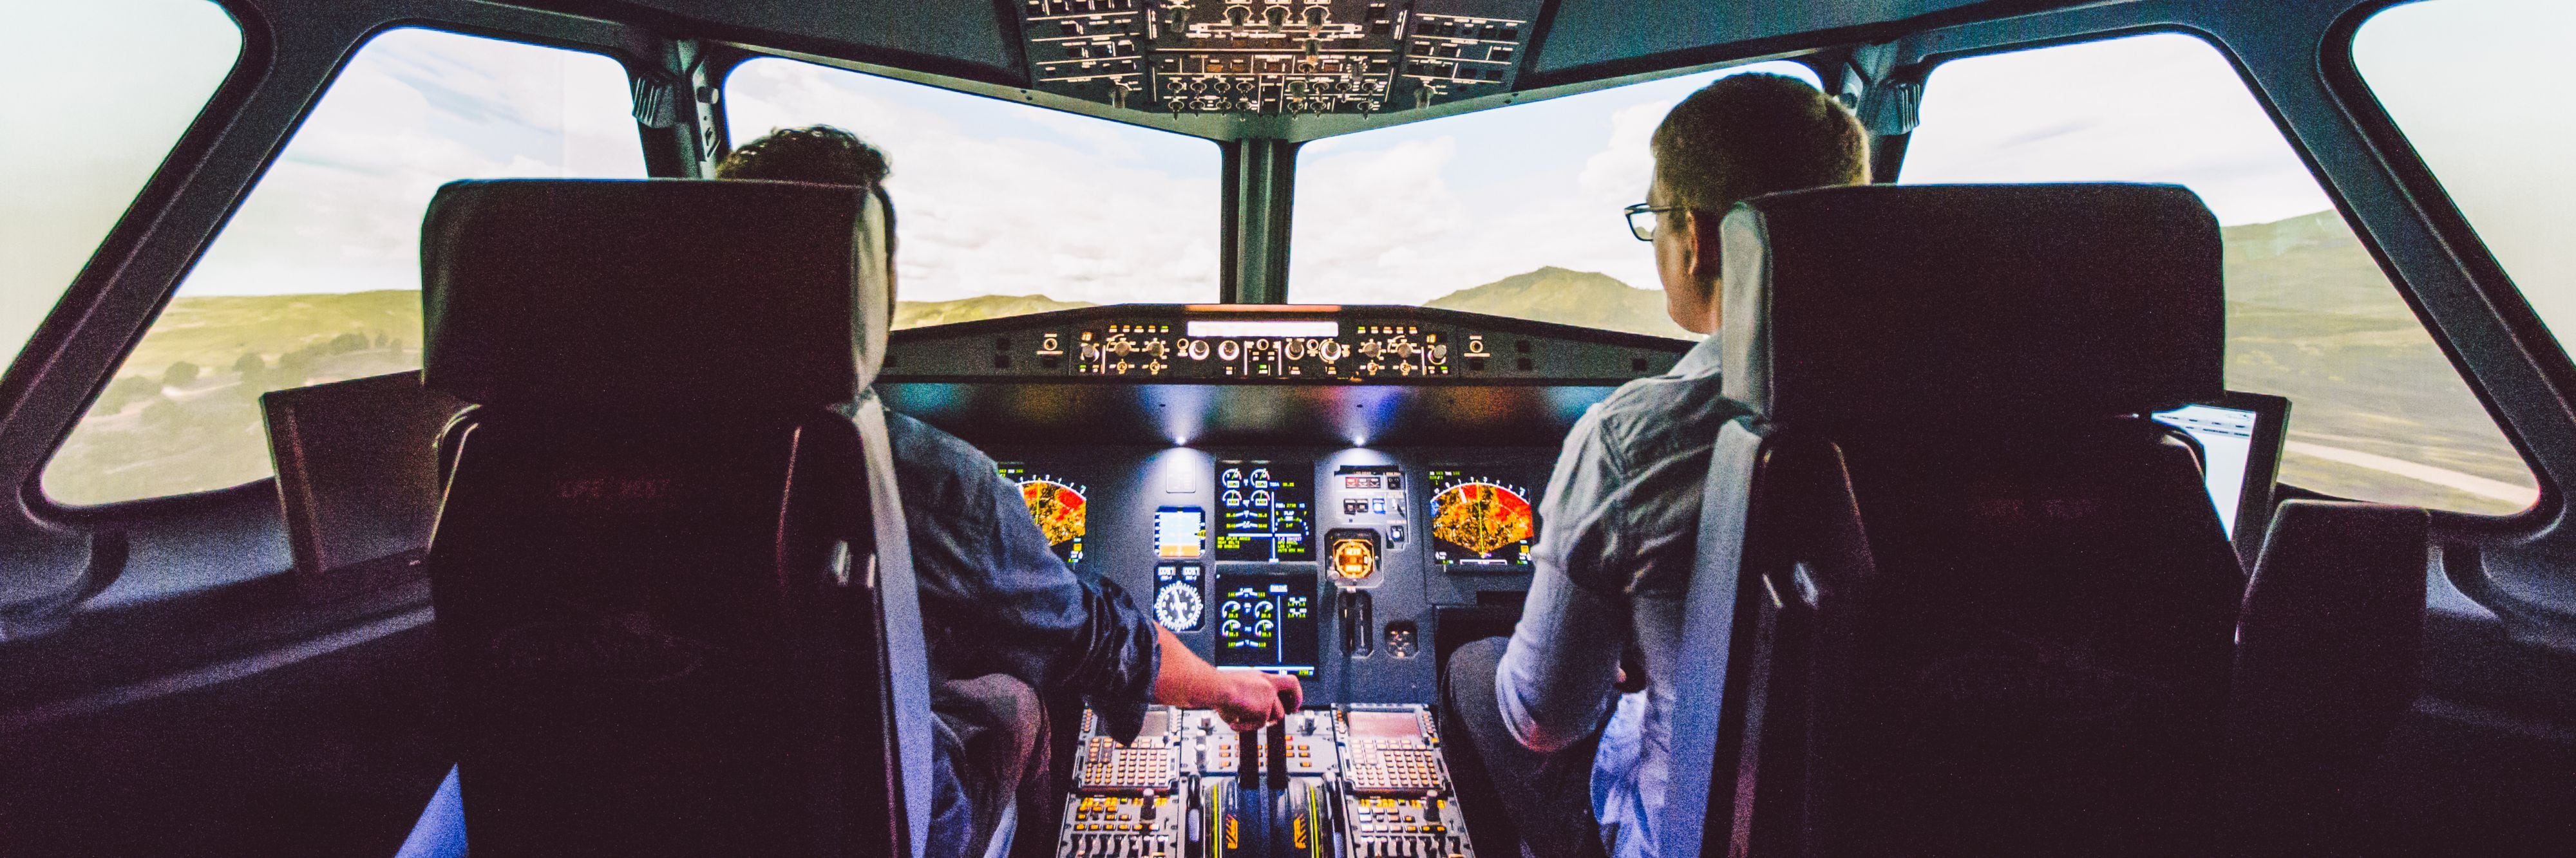 Aviasim Flight Simulator Experience